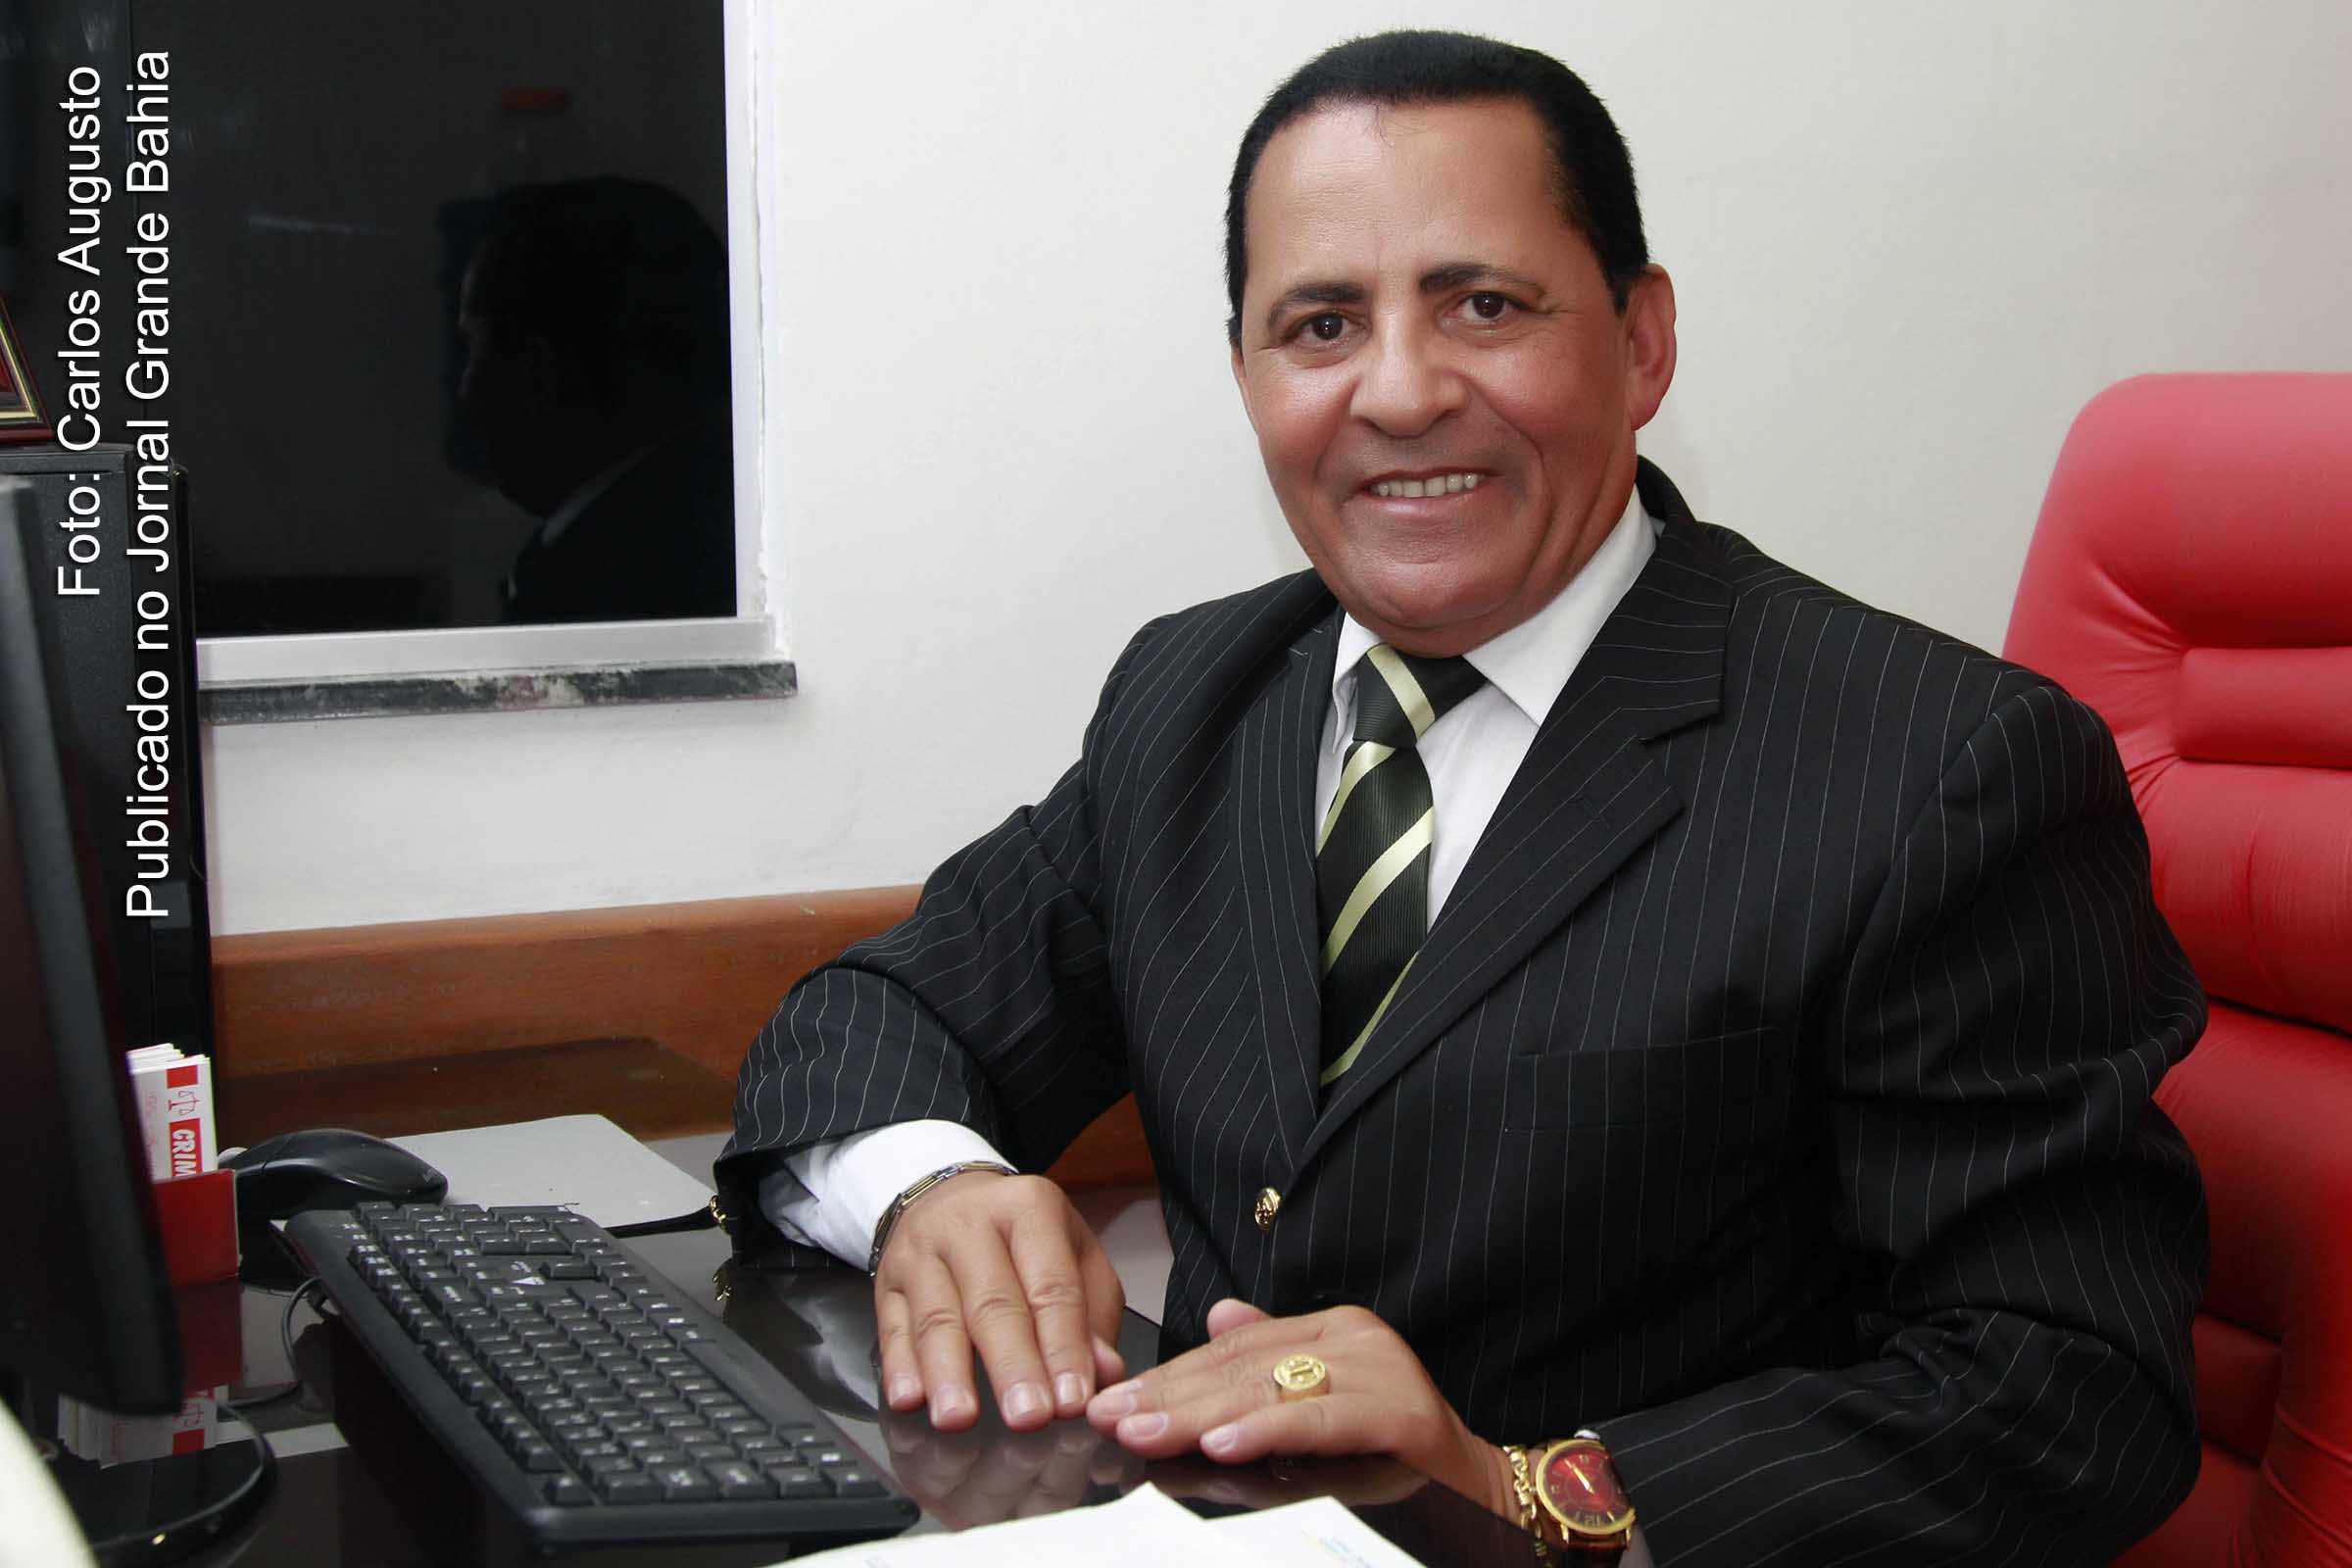 Advogado Fernando Oliveira comemora aniversário ao lado de amigos e familiares.